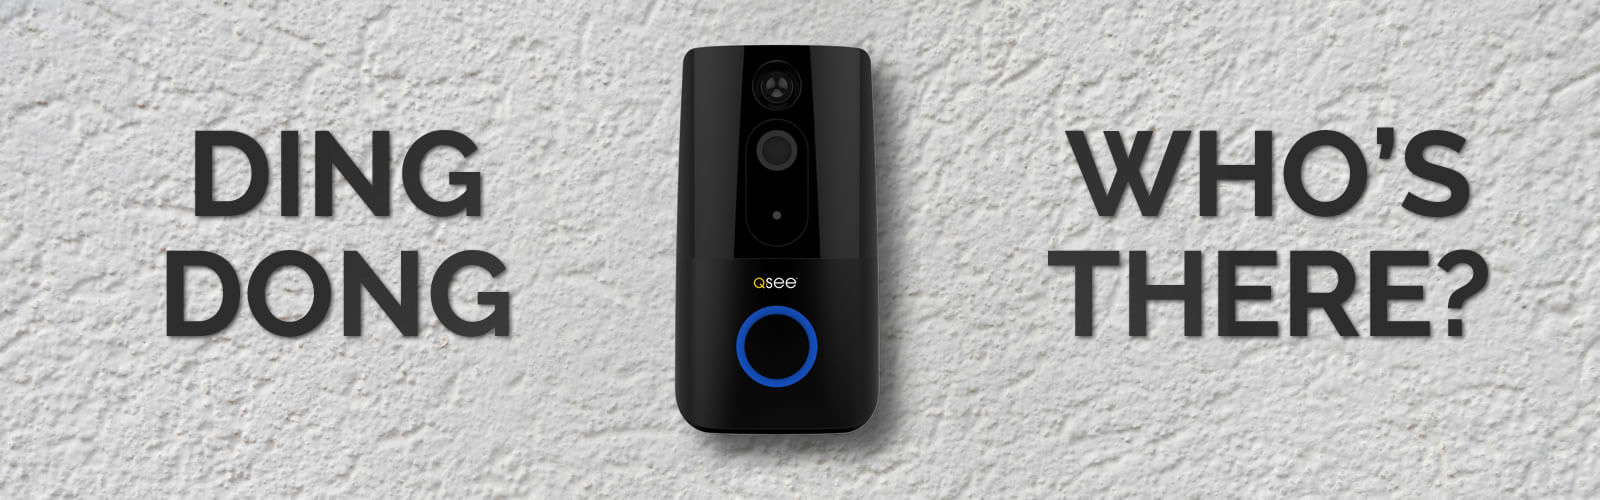 wifi video doorbell australia